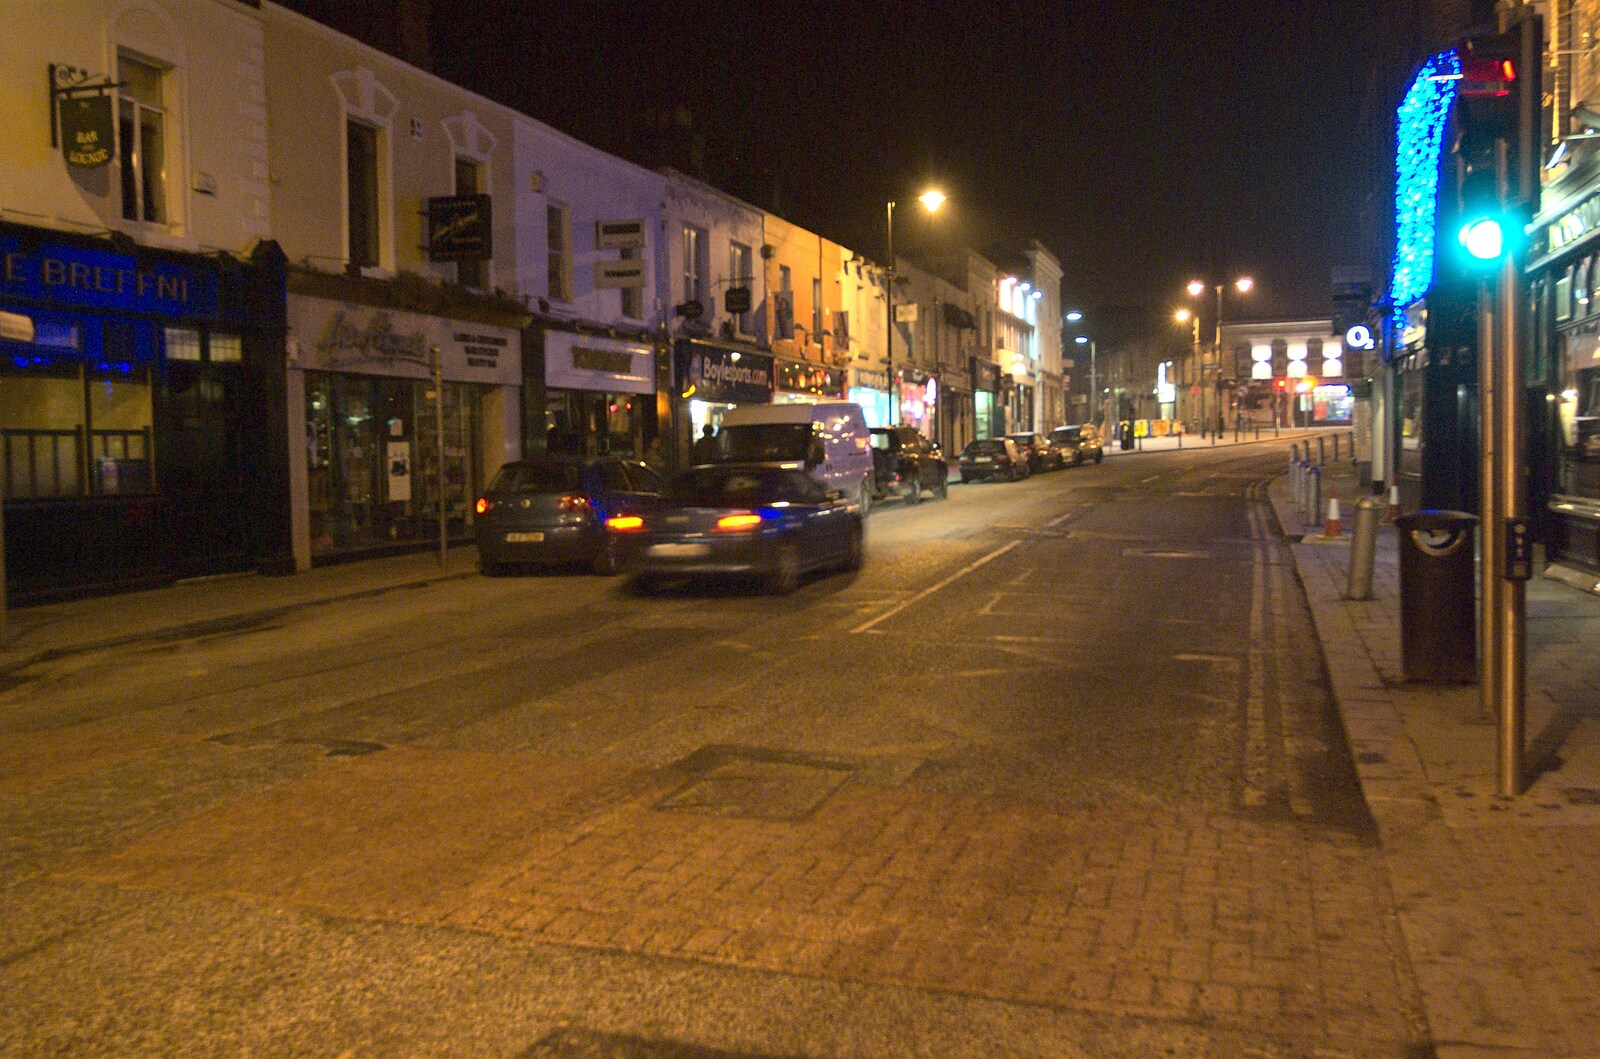 Cars on Main Street, Blackrock from A Week in Monkstown, County Dublin, Ireland - 1st March 2011